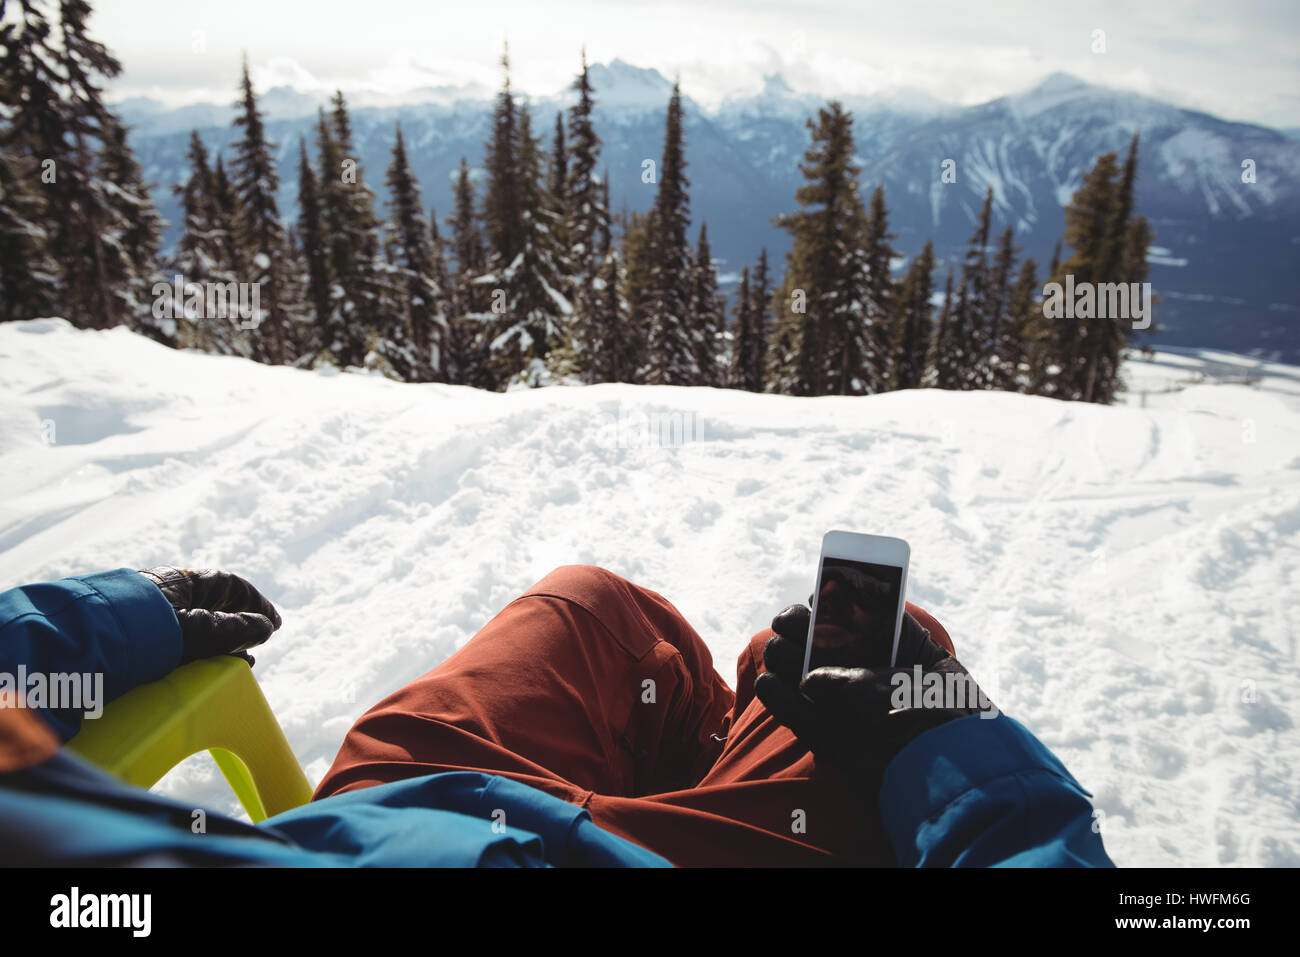 La section basse de man holding mobile phone à la montagne couverte de neige contre des arbres Banque D'Images